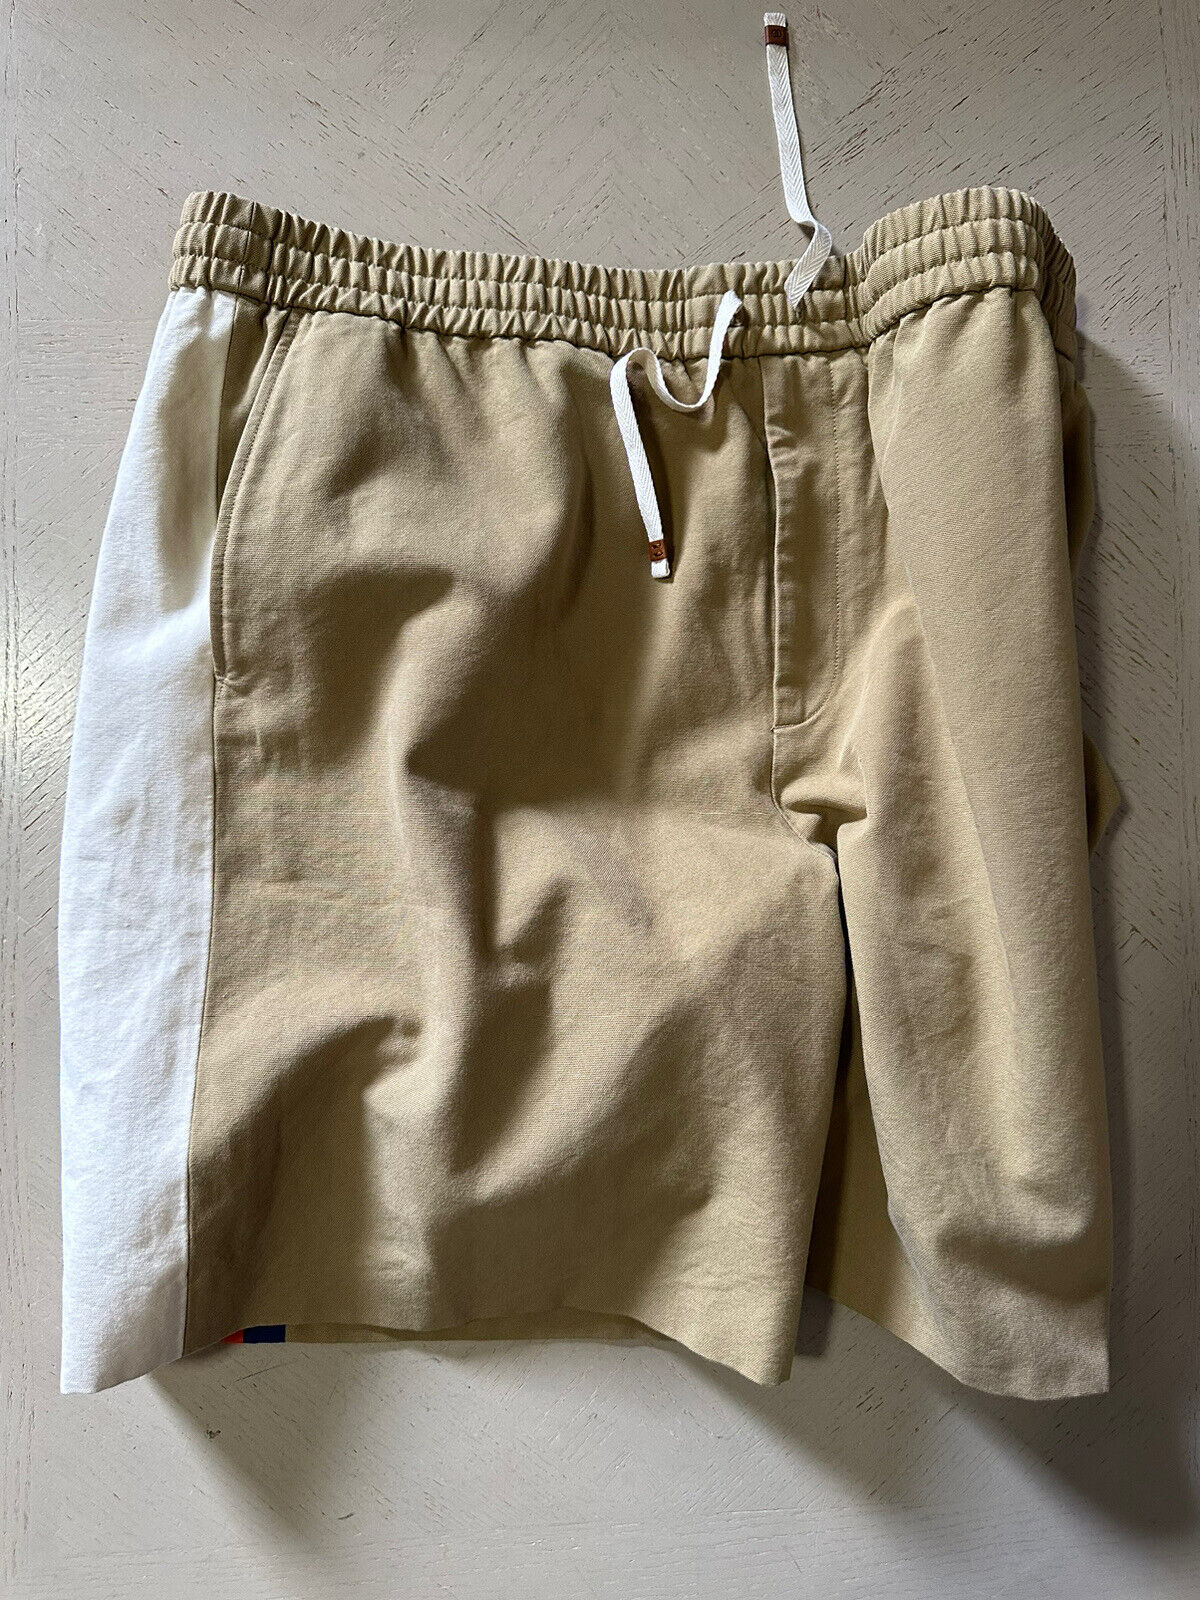 СЗТ $1400 Gucci Мужские короткие брюки из хлопковой парусины средней плотности DK Бежевый/Мул. 40 США/56 ЕС